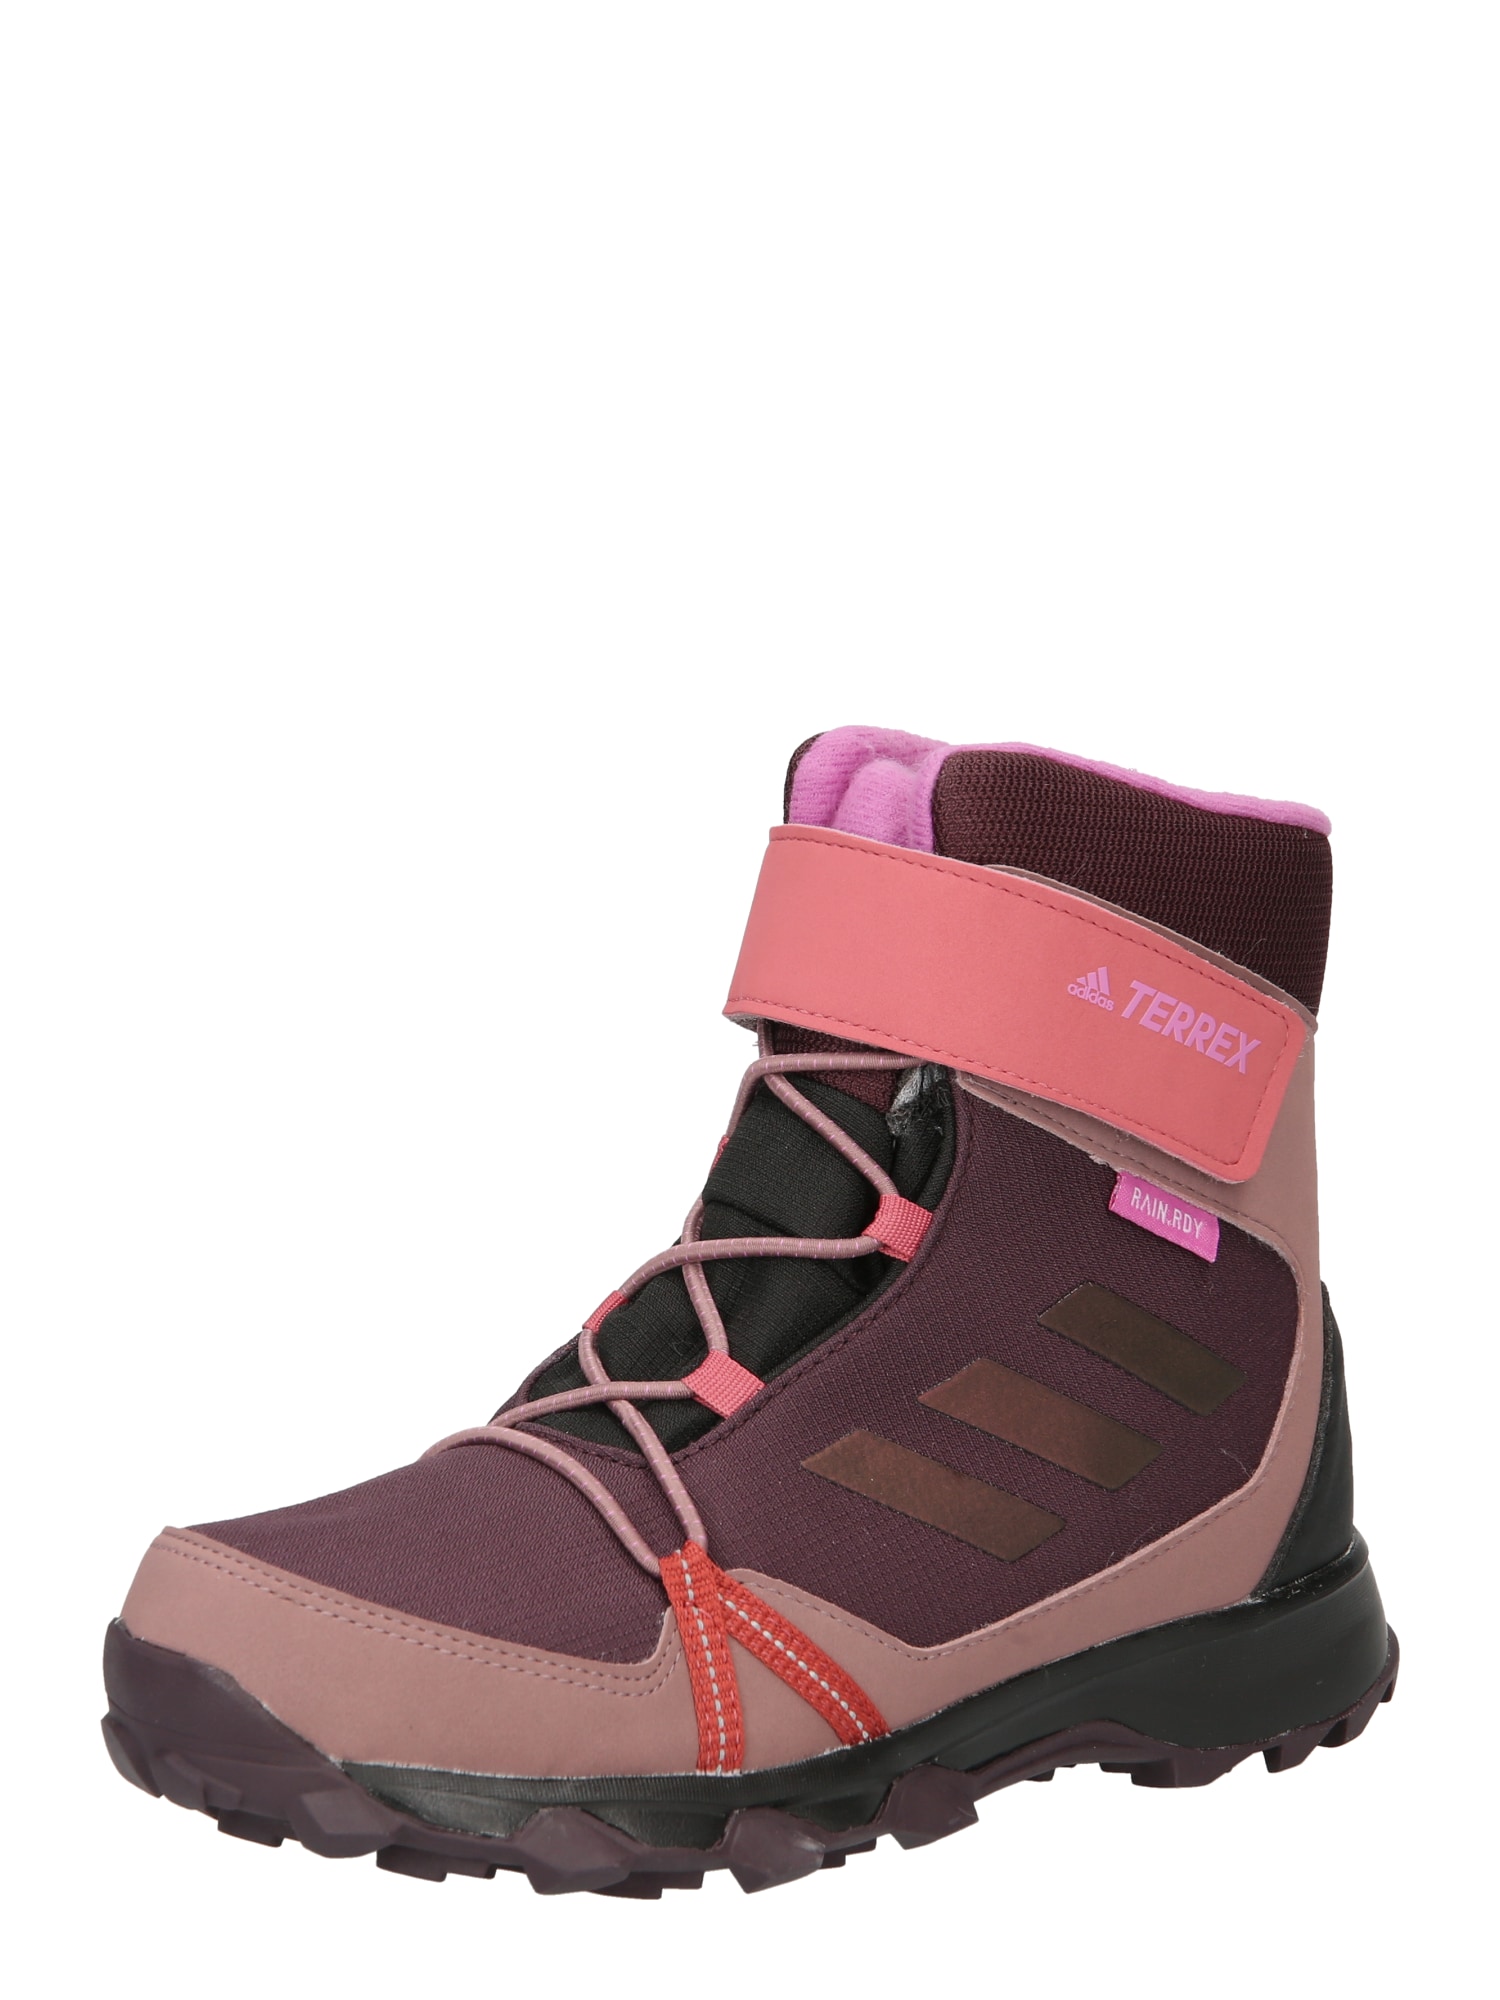 ADIDAS TERREX Auliniai batai purpurinė / rožinė / tamsiai raudona